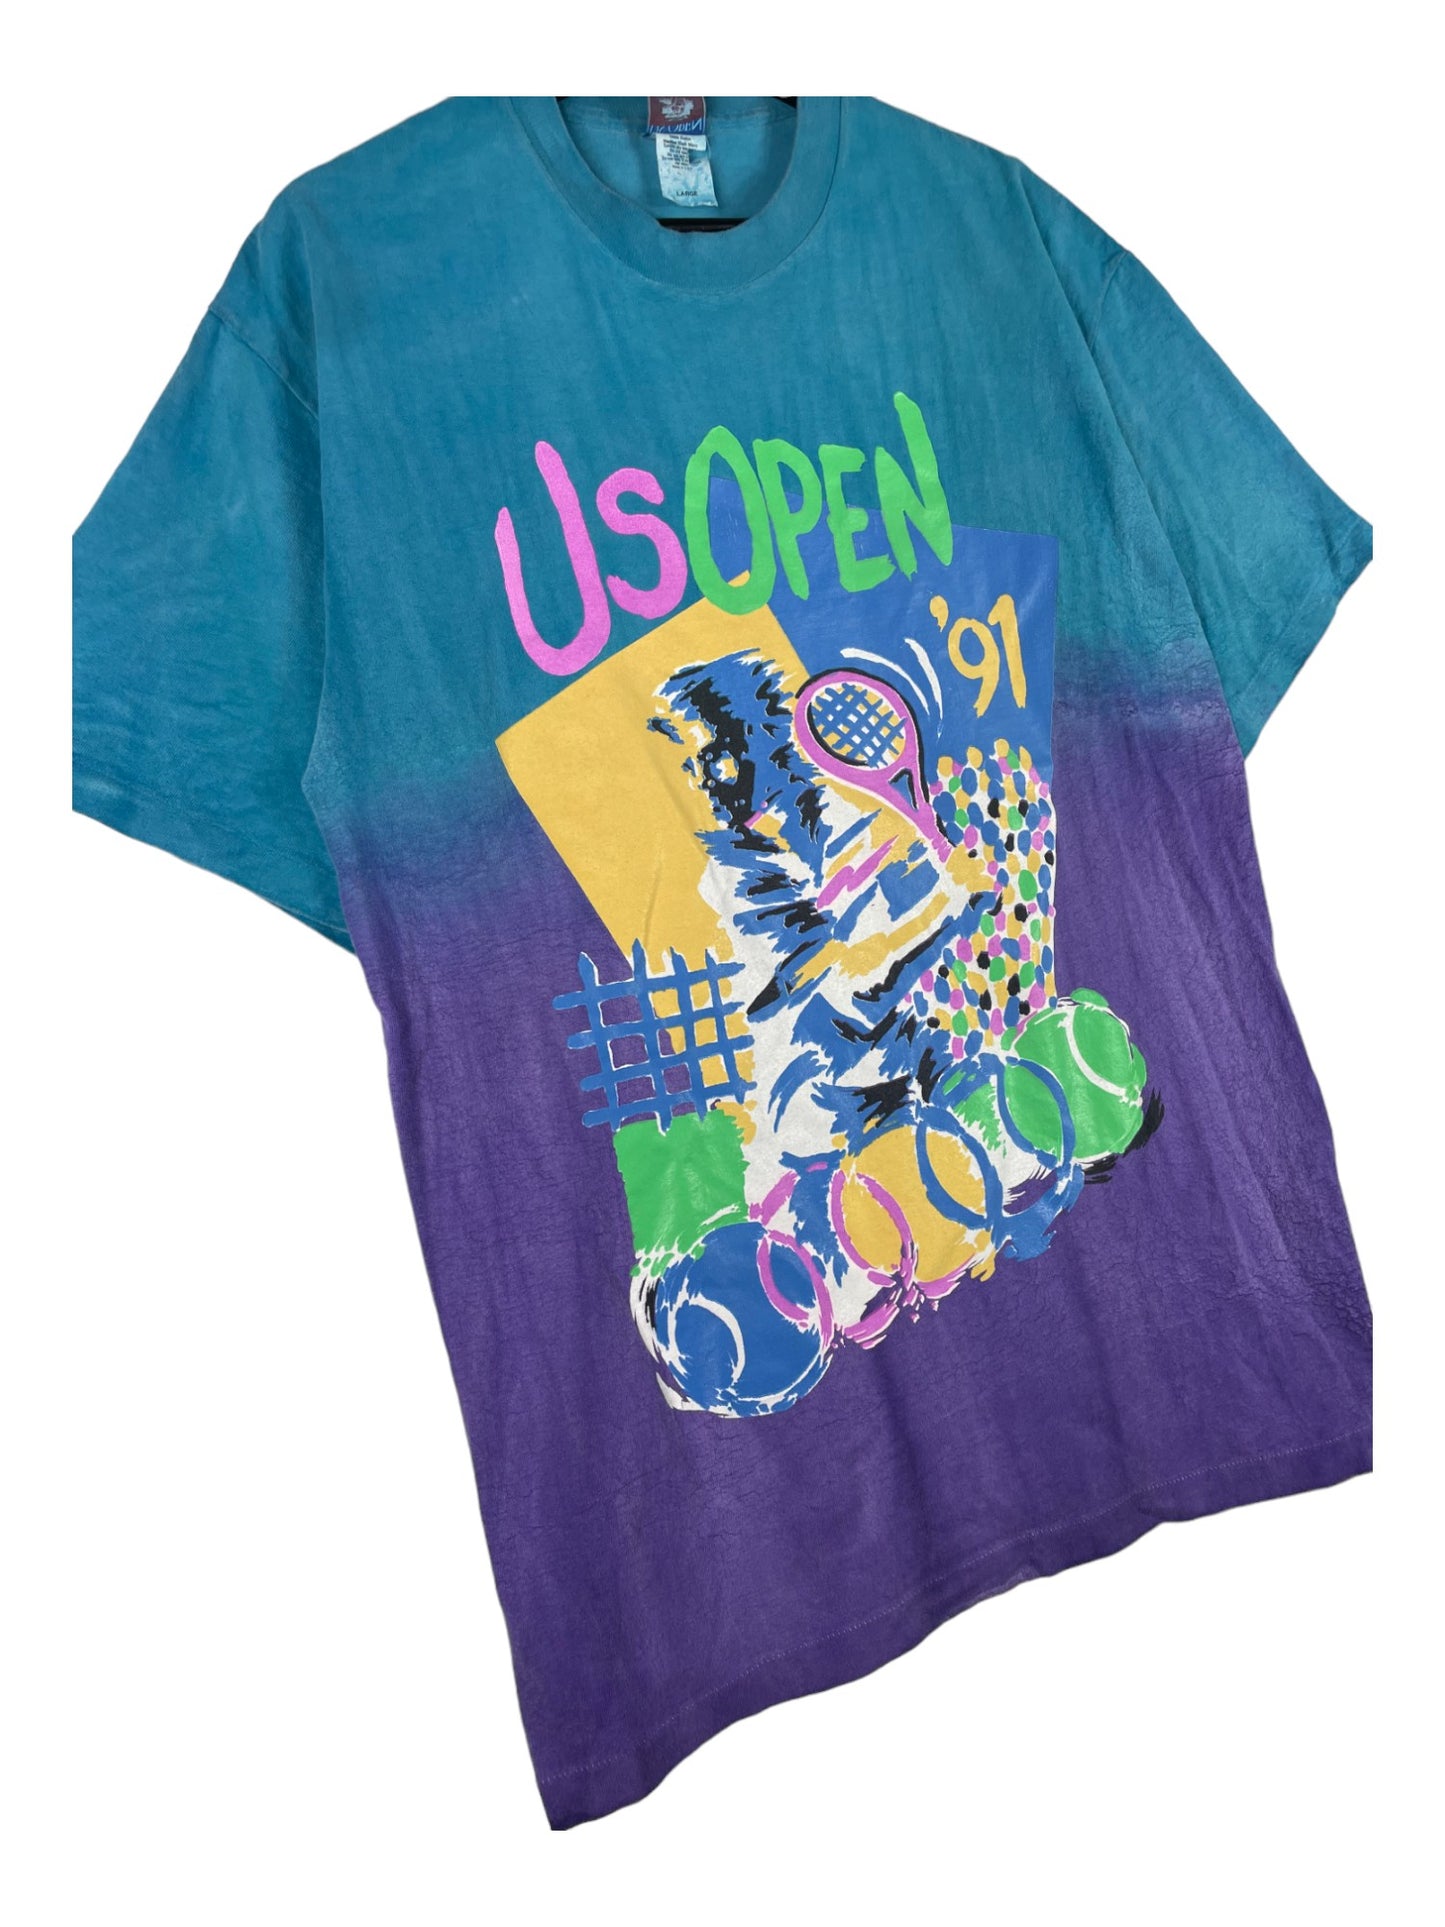 US Open T-Shirt